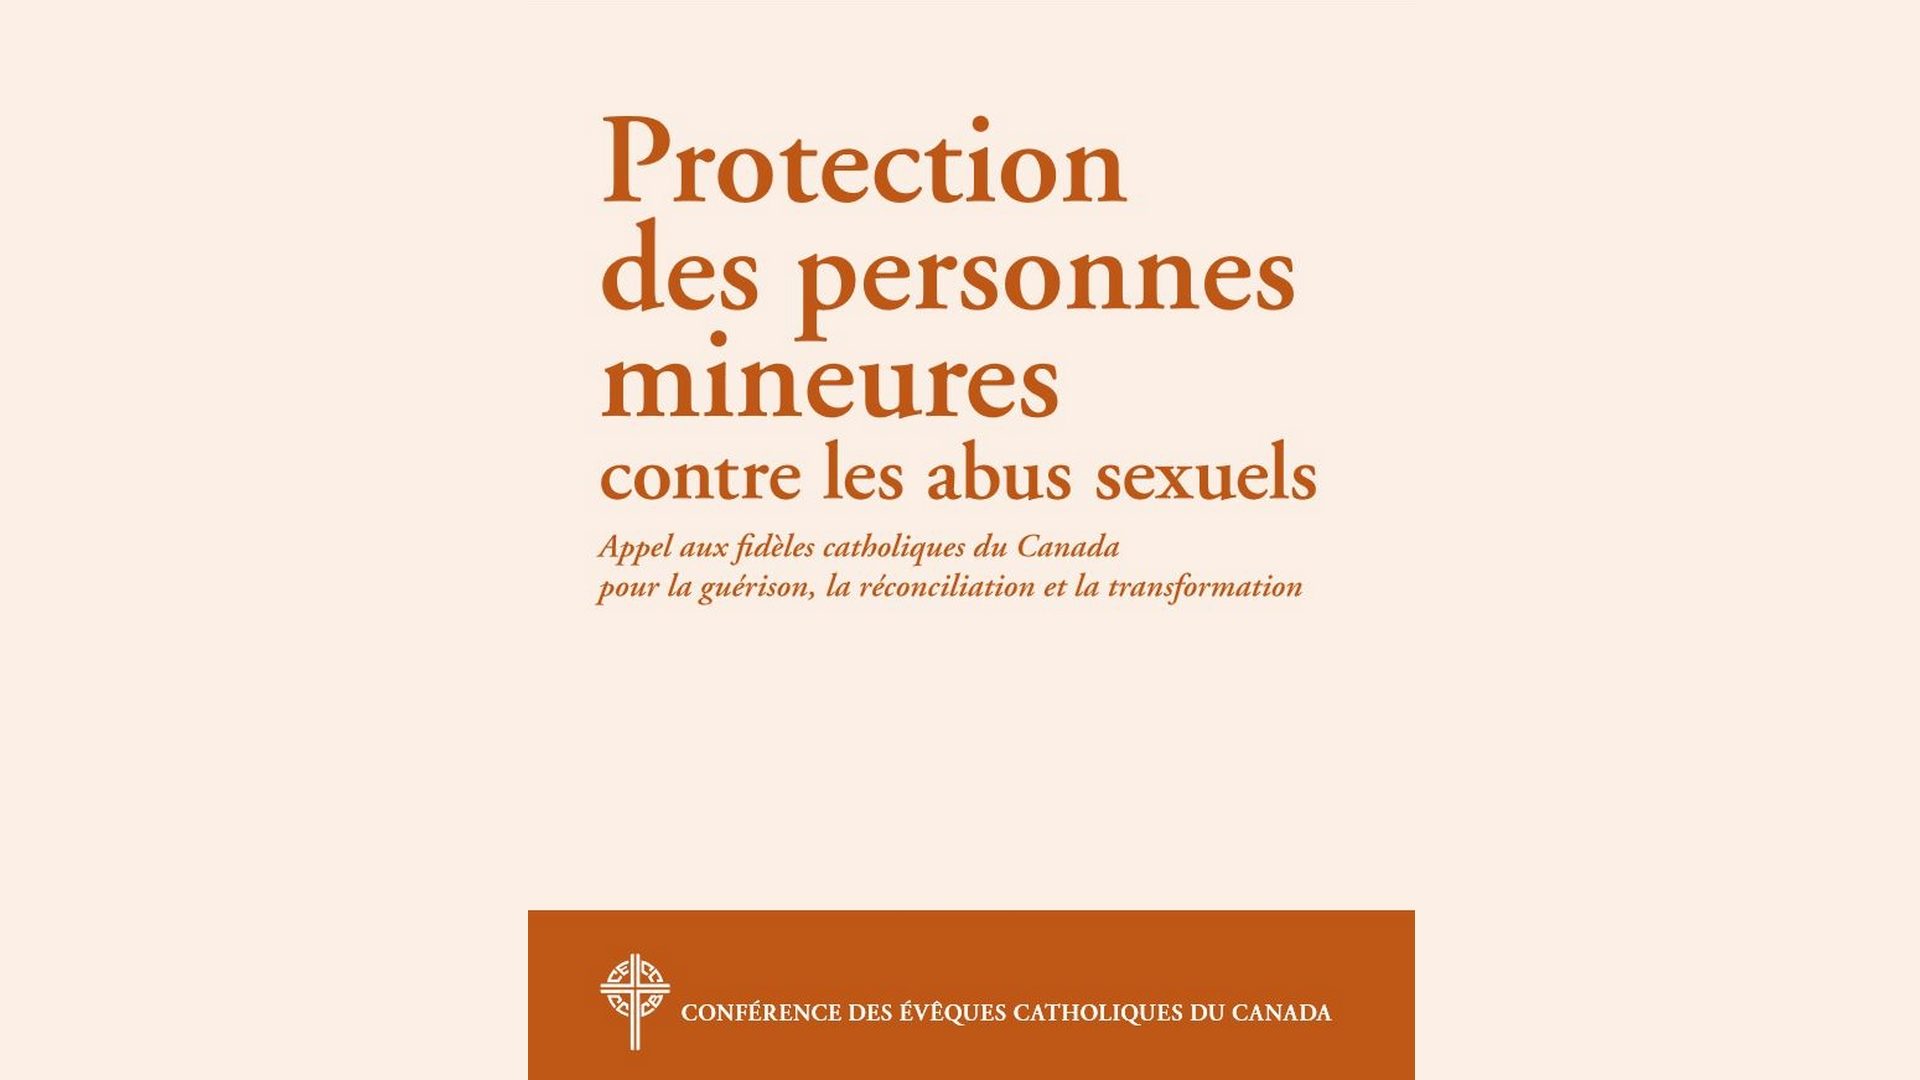 Les abus sexuels ont profondément marqué l'Eglise catholique au Canada